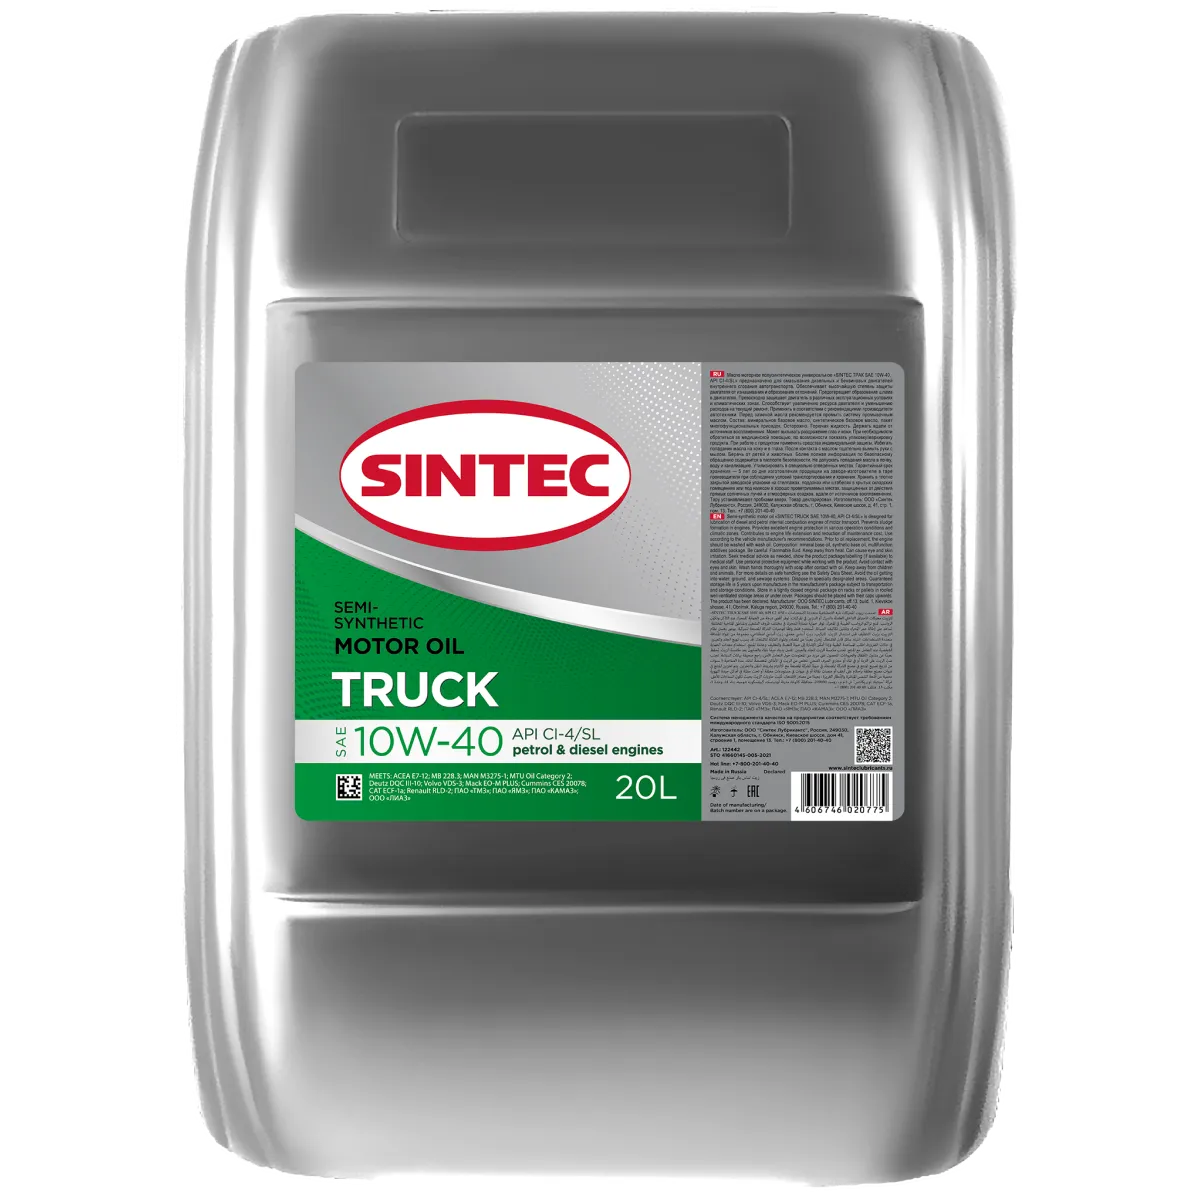 SINTEC TRUCK SAE 10W-40 API CI-4/SL Масла для коммерческой техники: описание, применение, свойства, где
							купить